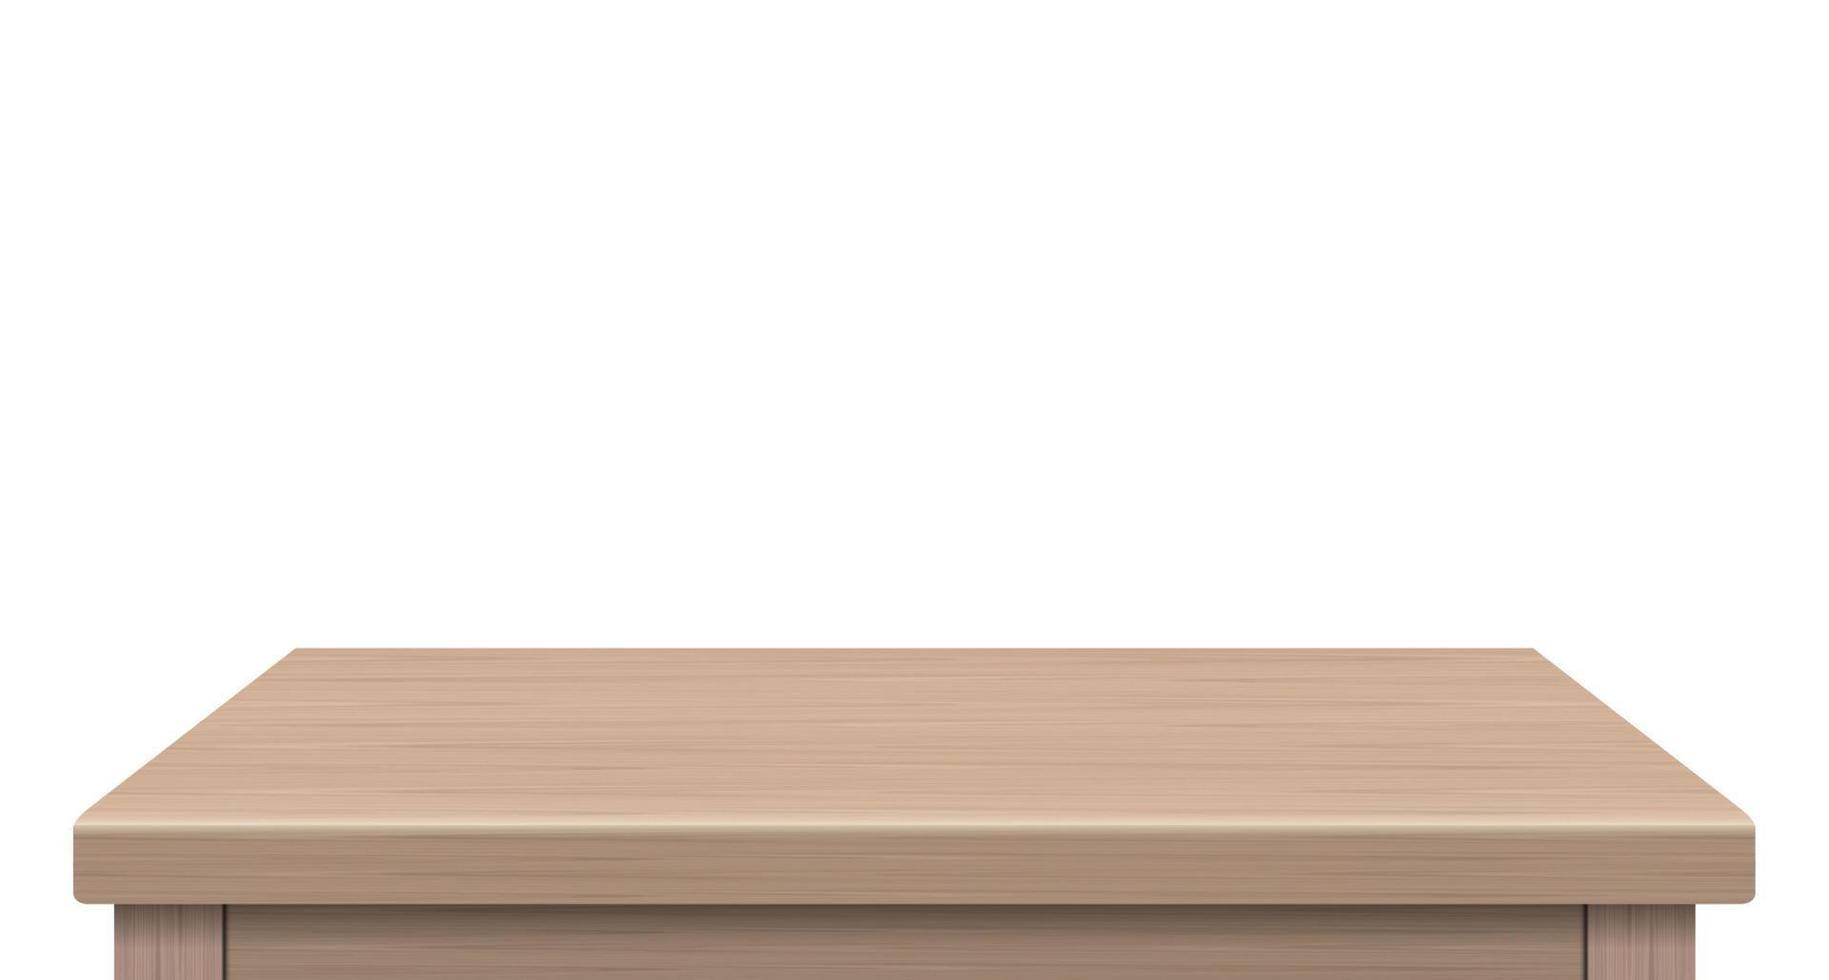 vista lateral da mesa de madeira vazia do espaço livre, para sua marca de cópia. usado para produtos de exibição ou montagem. conceito de estilo vintage. superfície realista de madeira marrom isolada no fundo branco. vetor 3D.